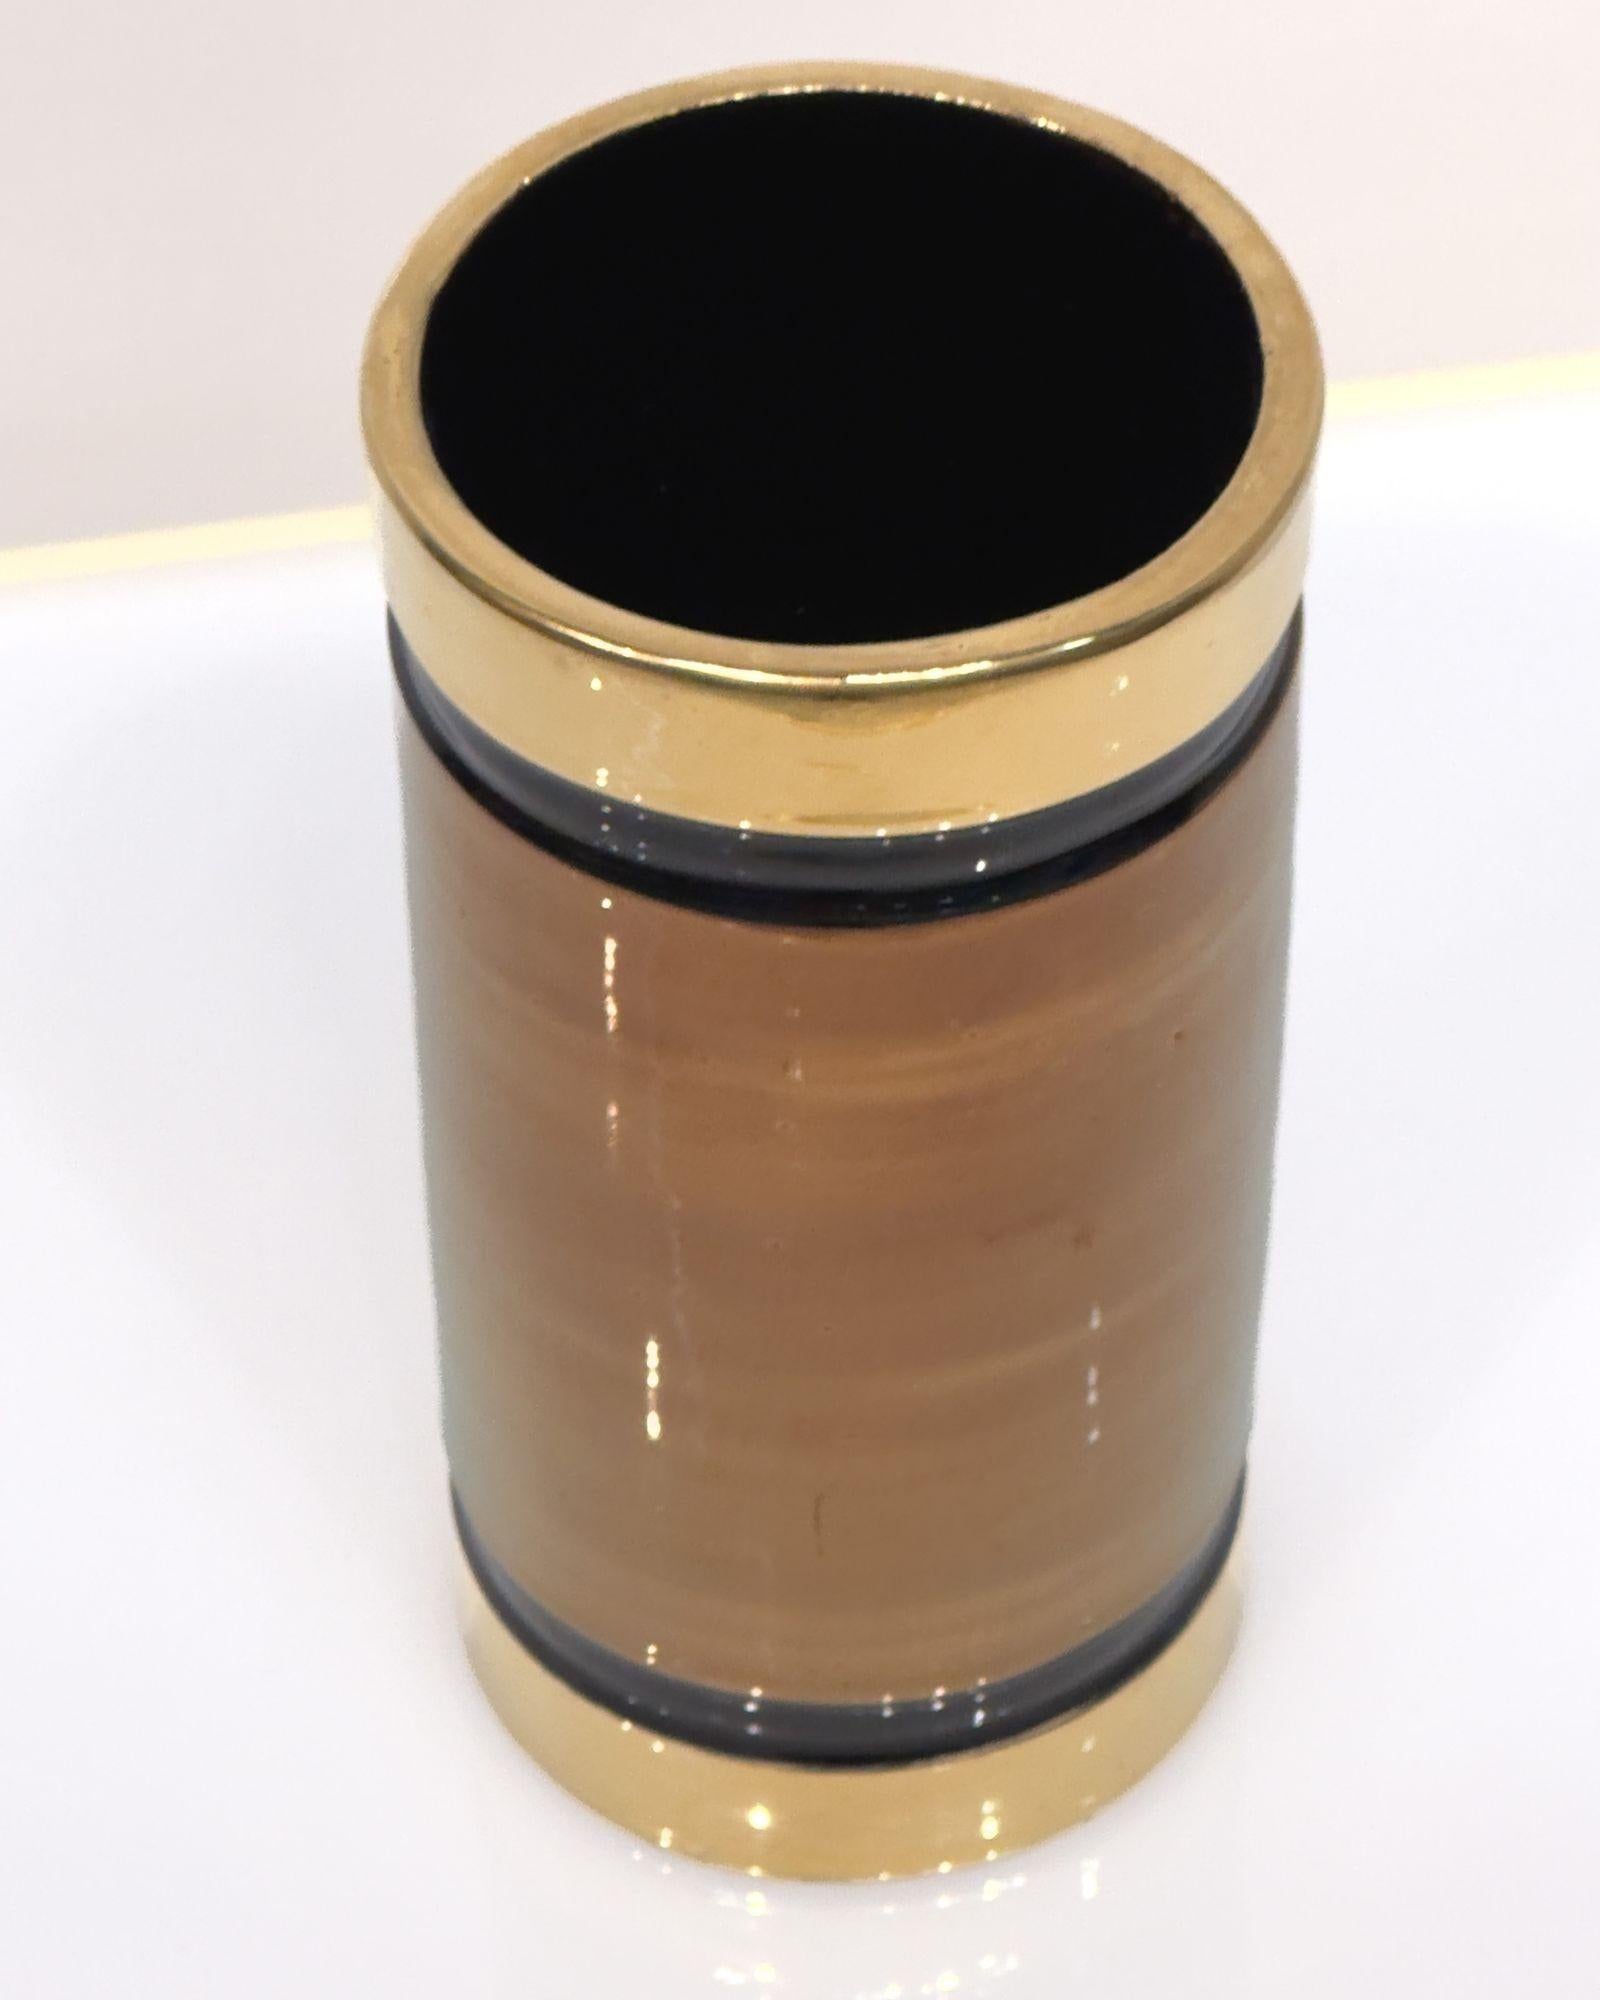 Bitossi Rosenthal-Netter Vase Gold/Schwarz Metallic, Italien. Die Vase ist auf dem Boden mit dem Label Italy versehen.
Maße: 8